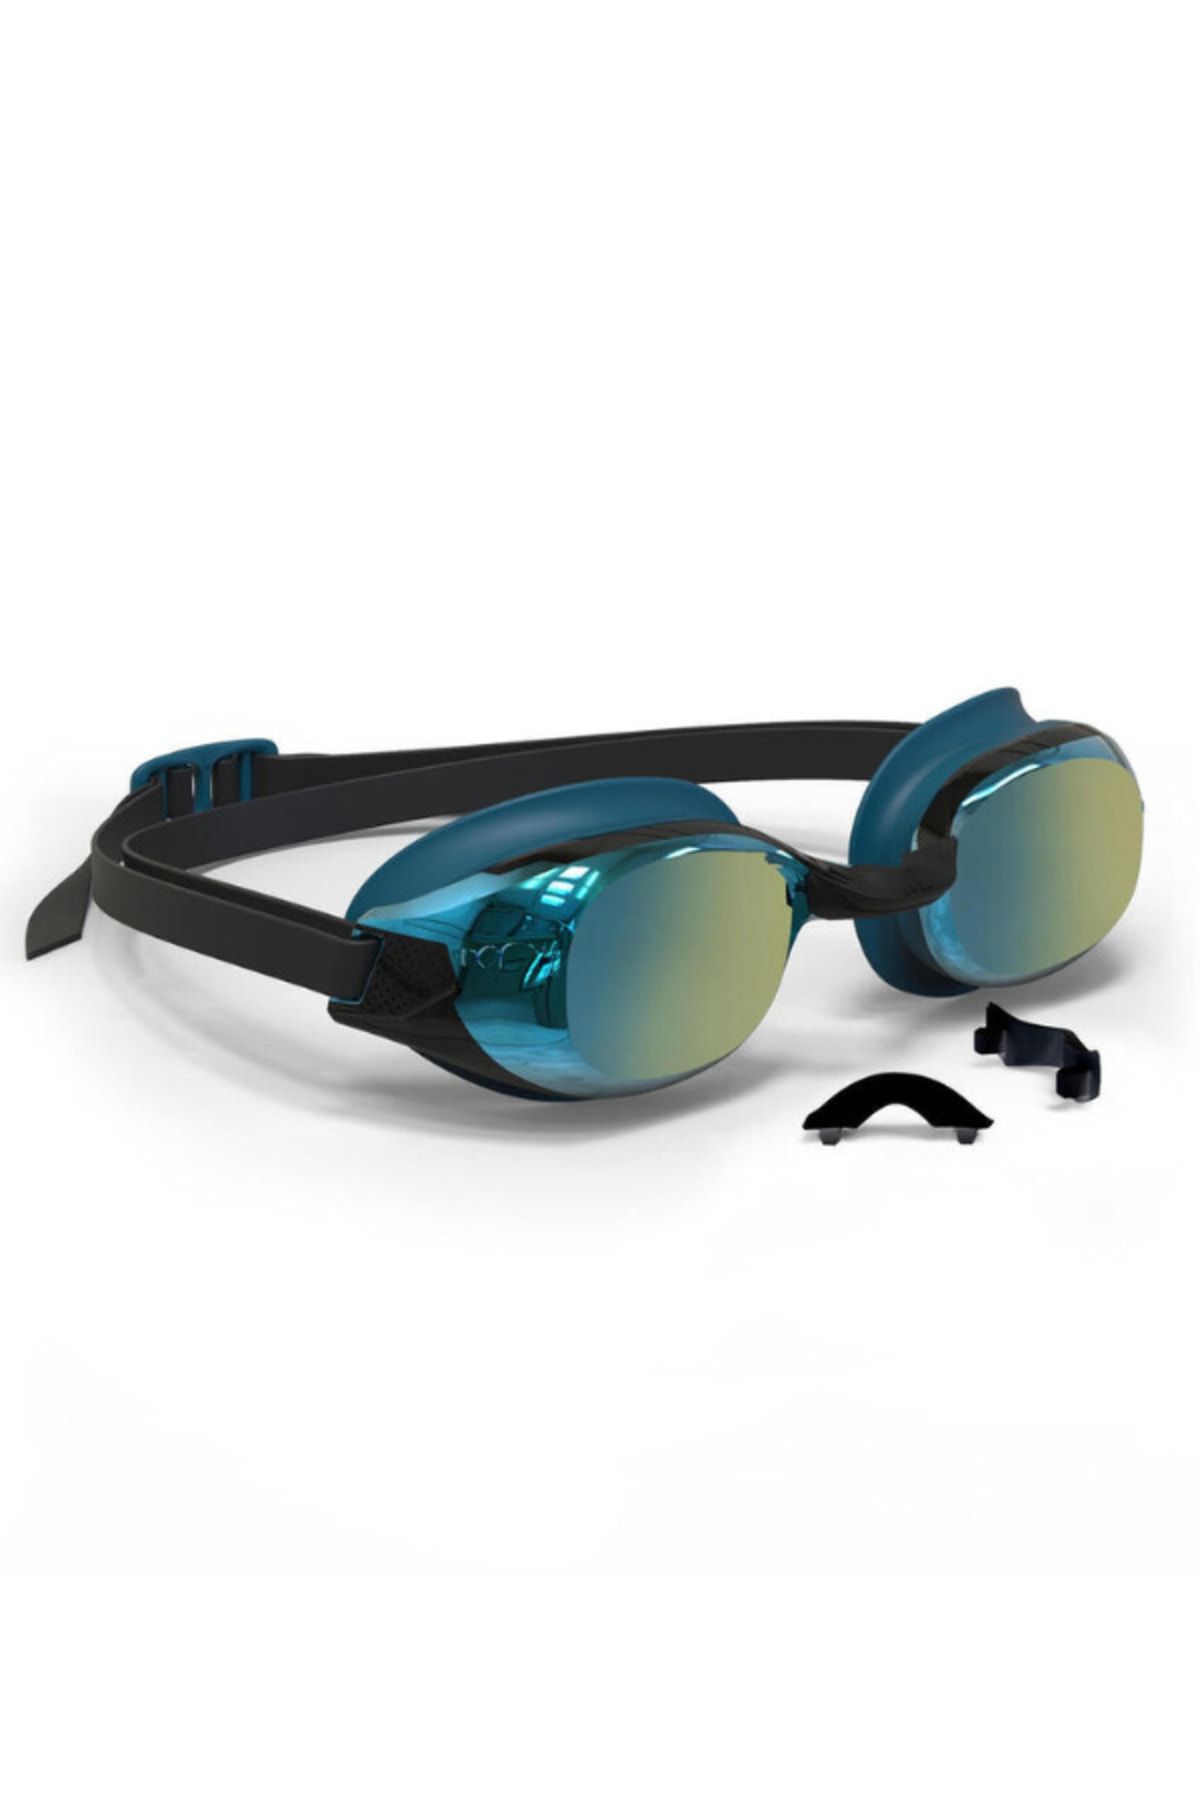 Decathlon - Aynalı Camlı Yüzücü Gözlüğü Mavi Siyah Bfıt